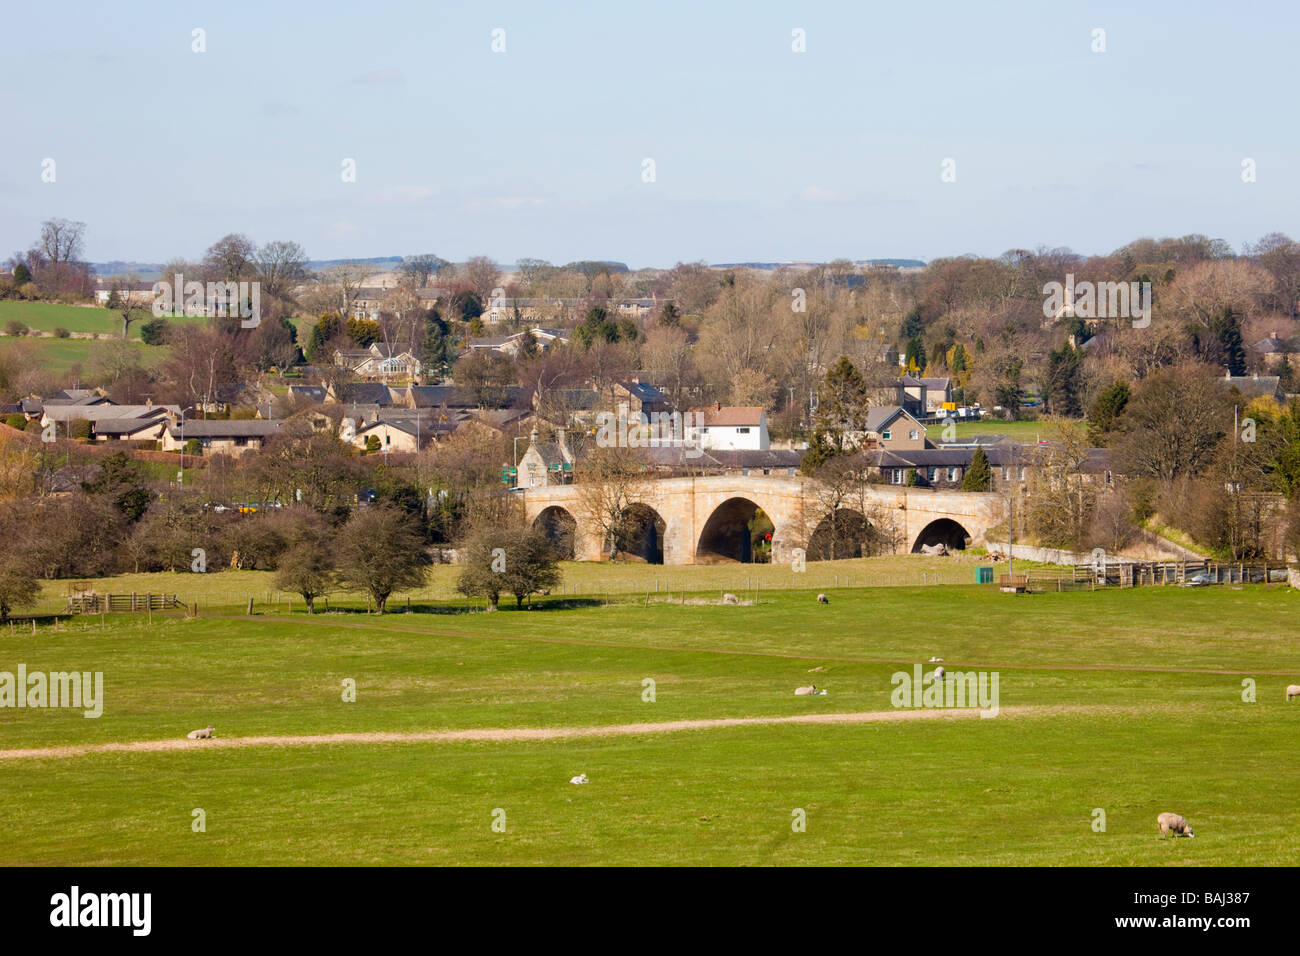 Scène de campagne anglais dans le Nord de la vallée de la rivière Tyne avec moutons et le pont dans le village. Lechlade Northumberland England UK Banque D'Images